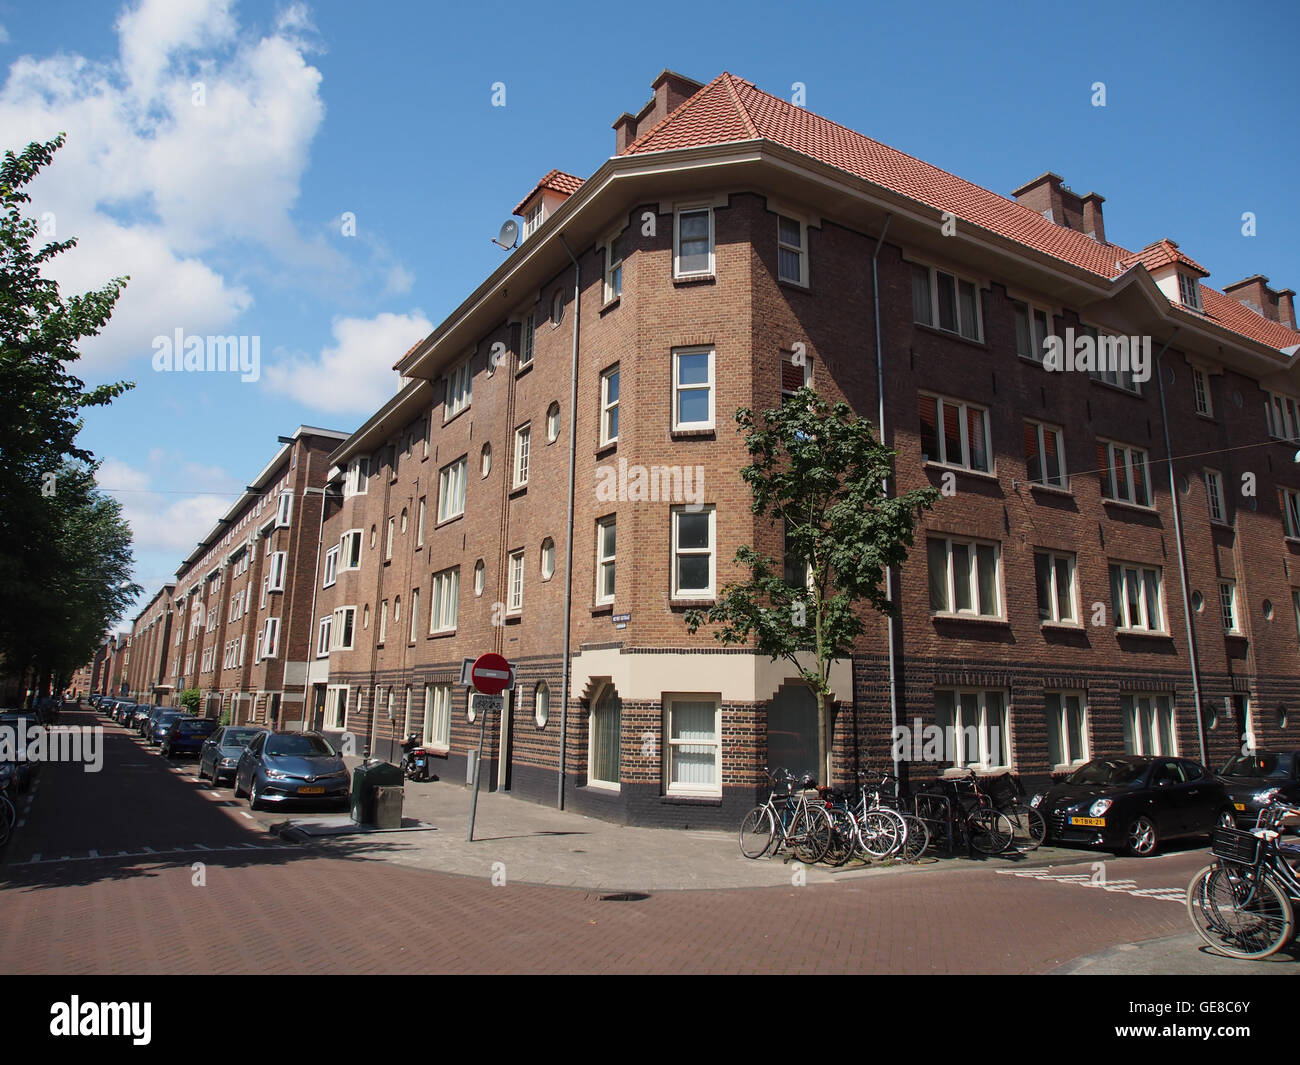 Hembrugstraat 44 en hoger, hoek Houtrijkstraat pic2 Stock Photo